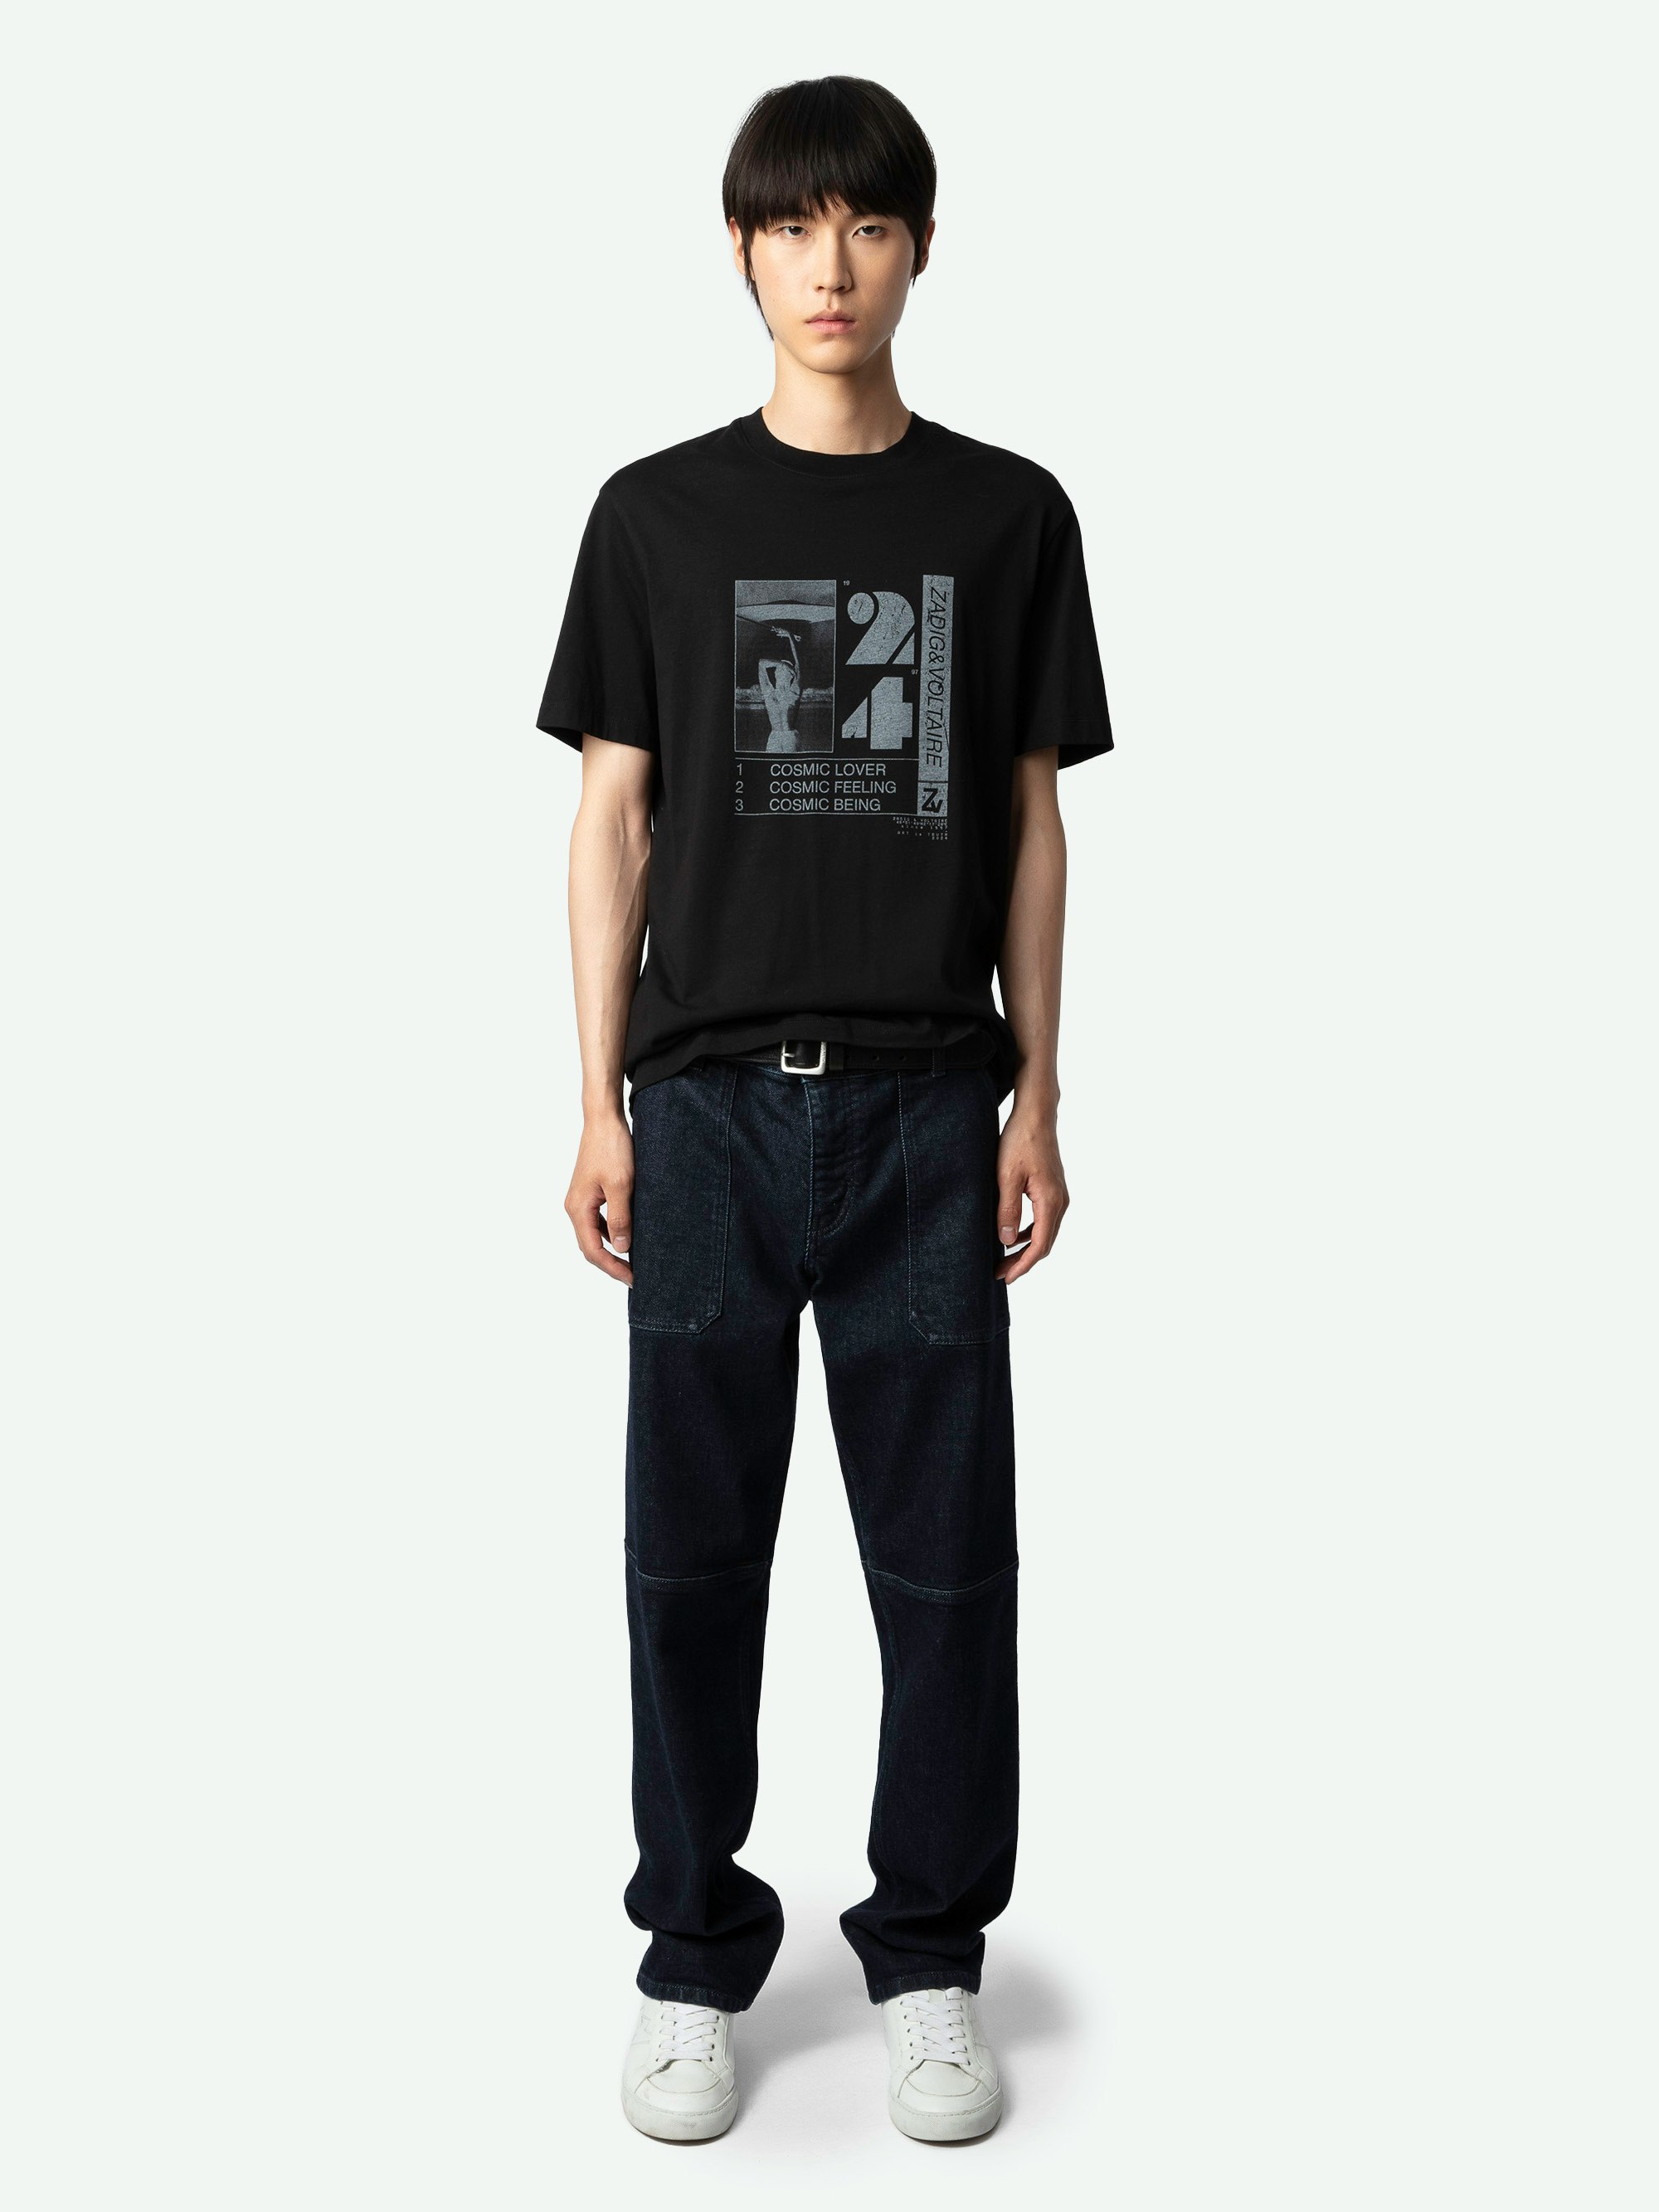 T-shirt Ted Photoprint - T-shirt en coton biologique noir à manches courtes et imprimé photoprint Cosmic à l'avant.